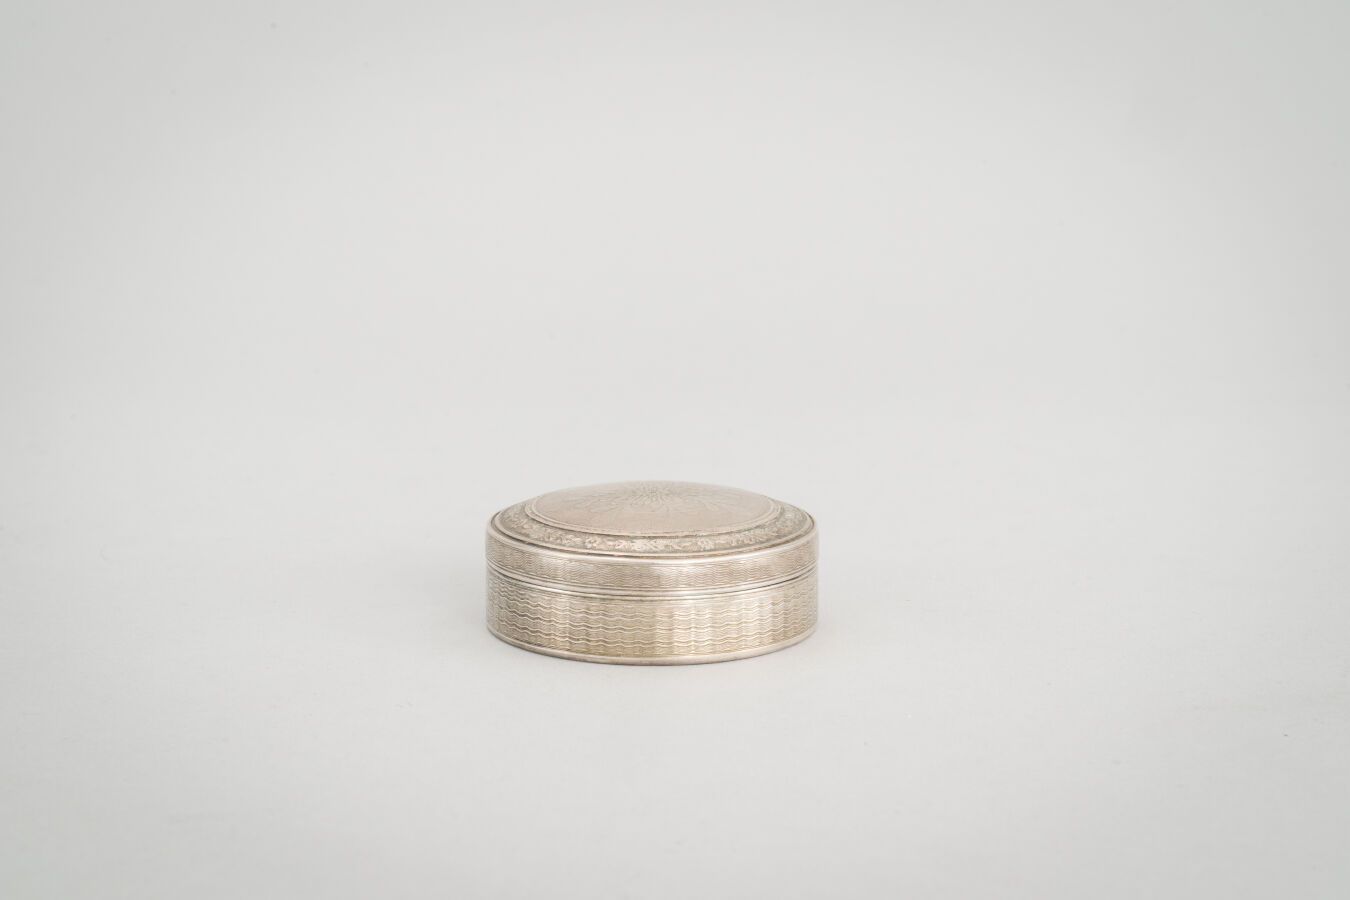 Null 74.一个圆形的银盒（800/1000），背景是玑镂式的风格化图案。

重量：45克